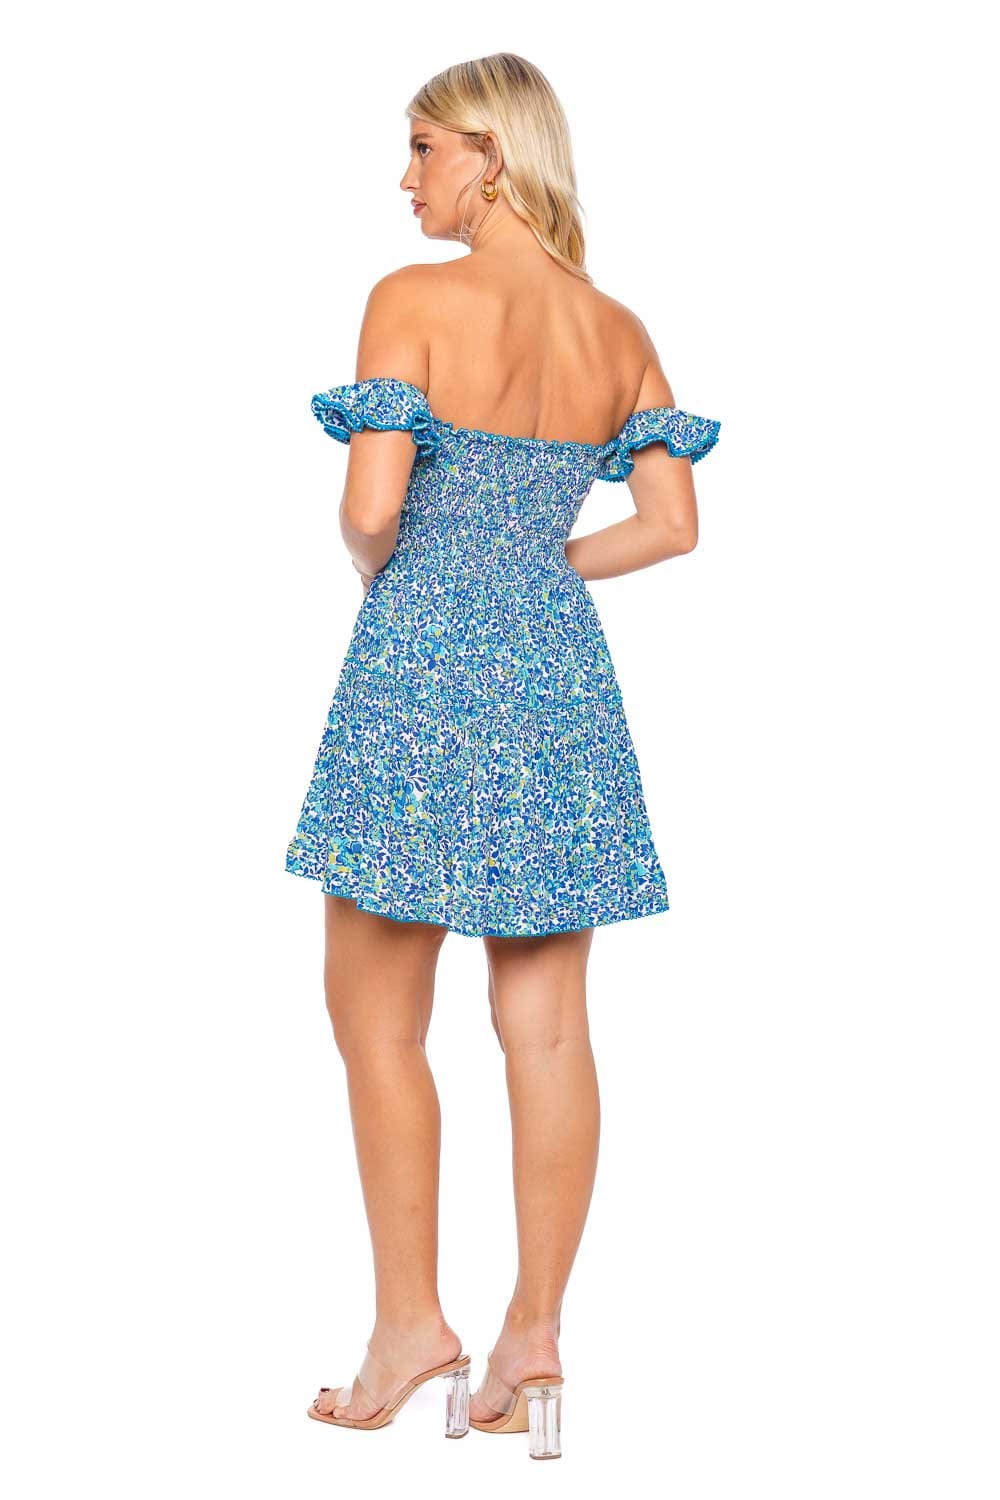 Poupette St Barth Aurora Blue Net Smocked Mini Dress